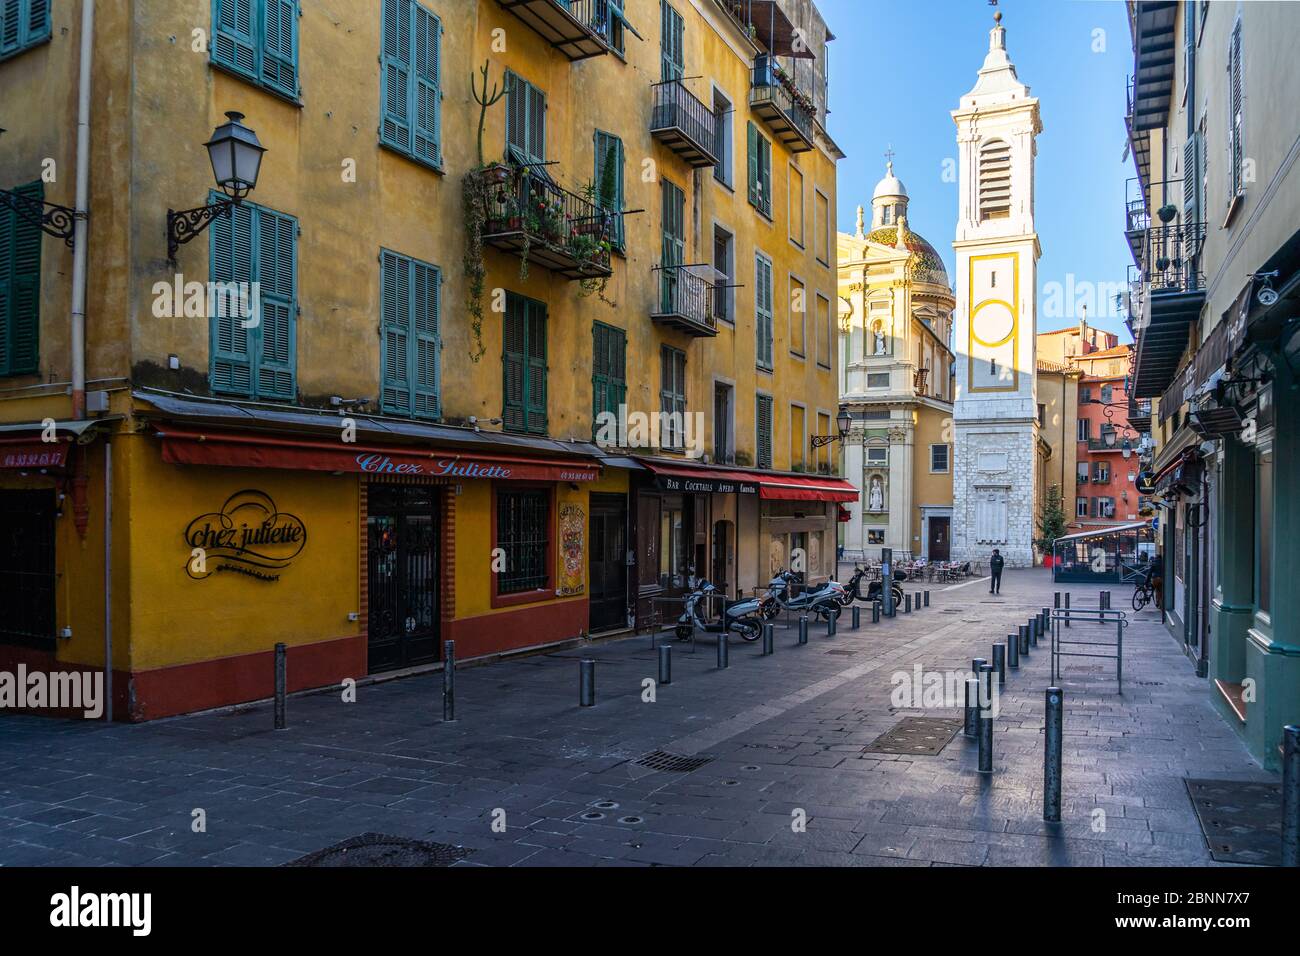 Une rue vide de la vieille ville de Nice (vieux Nice) menant à la place Rossetti et la cathédrale Saint Reparata. Nice, France, janvier 2020 Banque D'Images